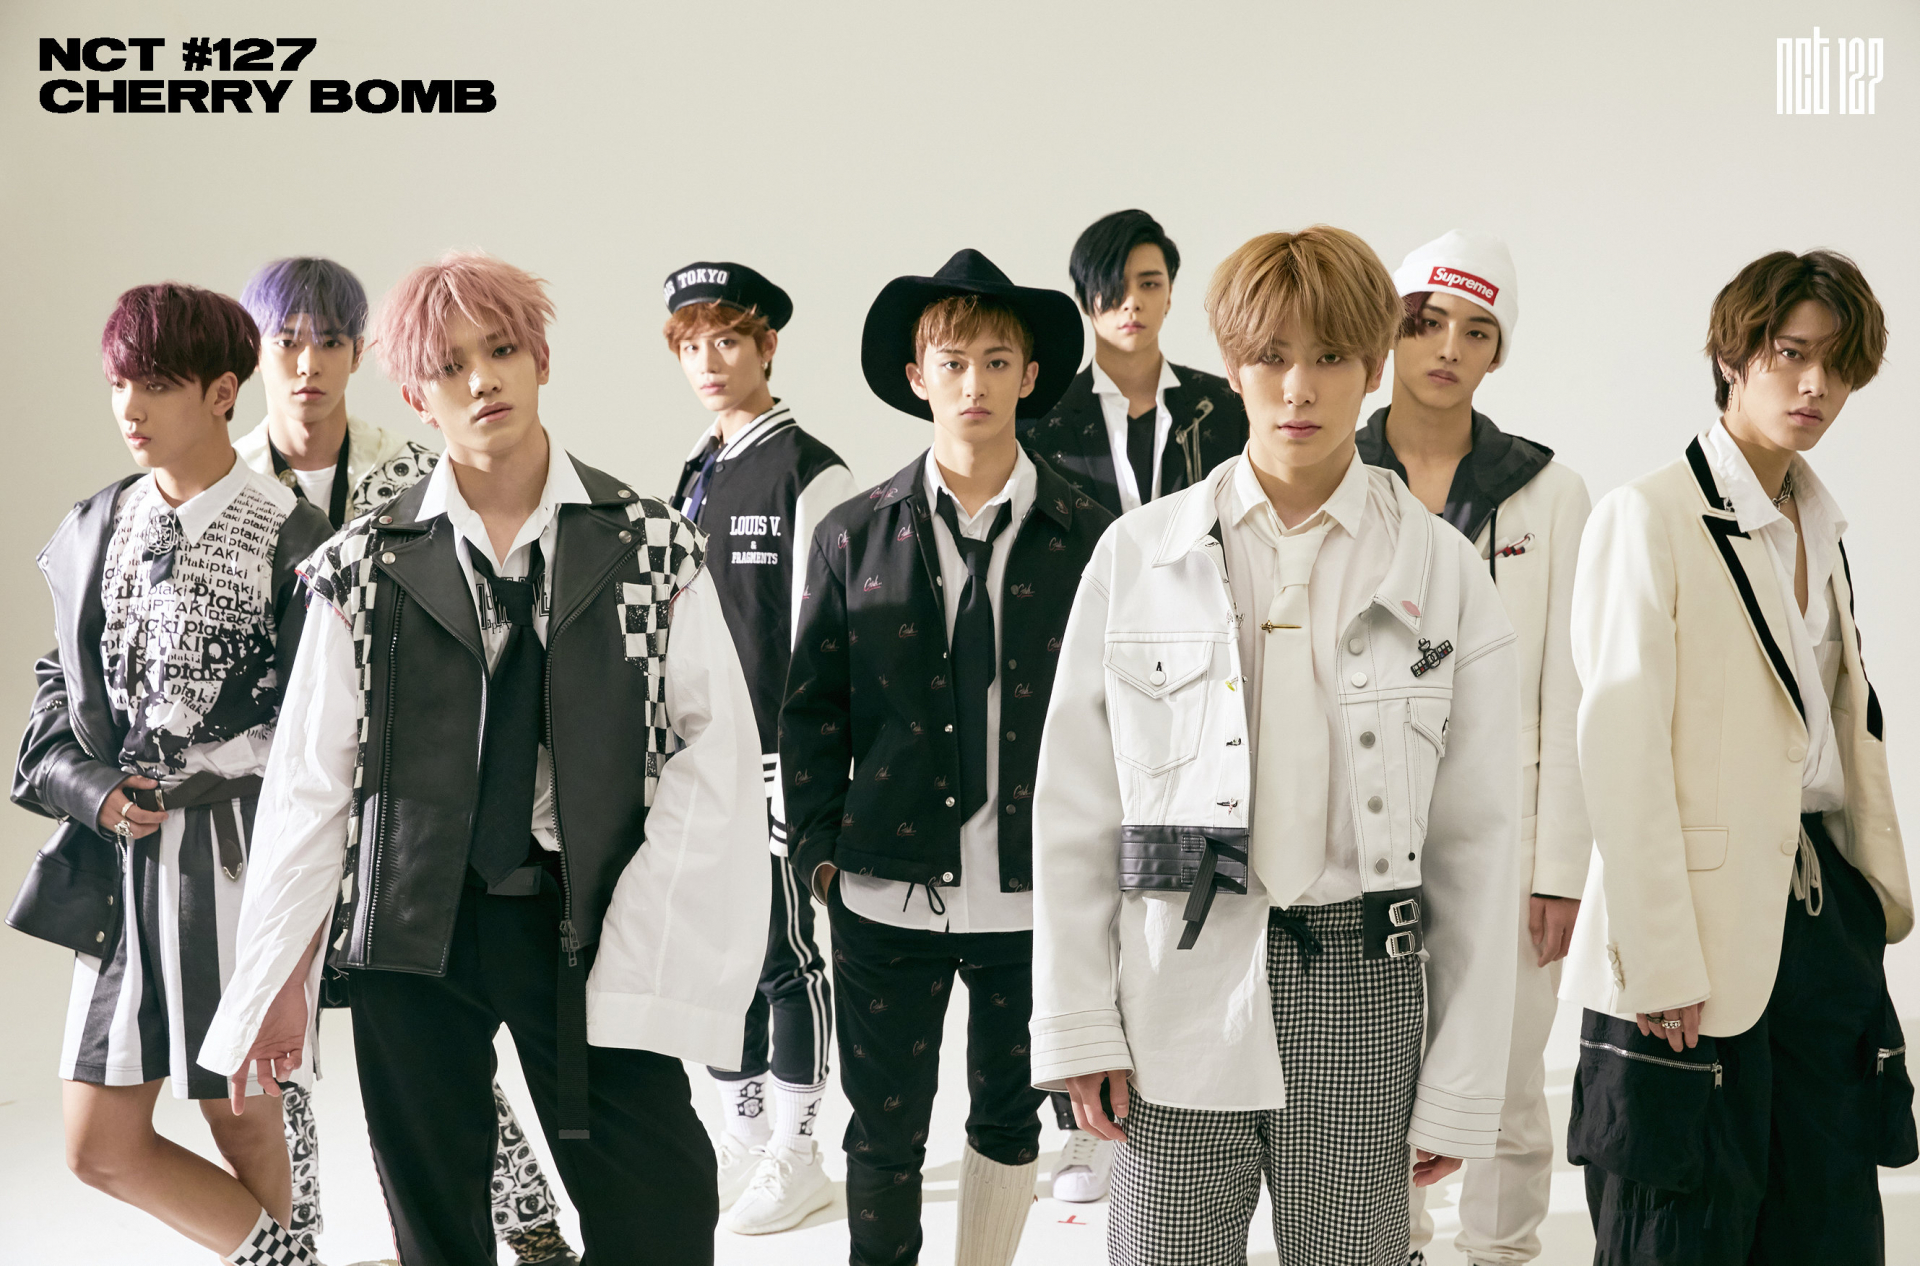 Album- és klippremier: NCT 127 – Cherry Bomb